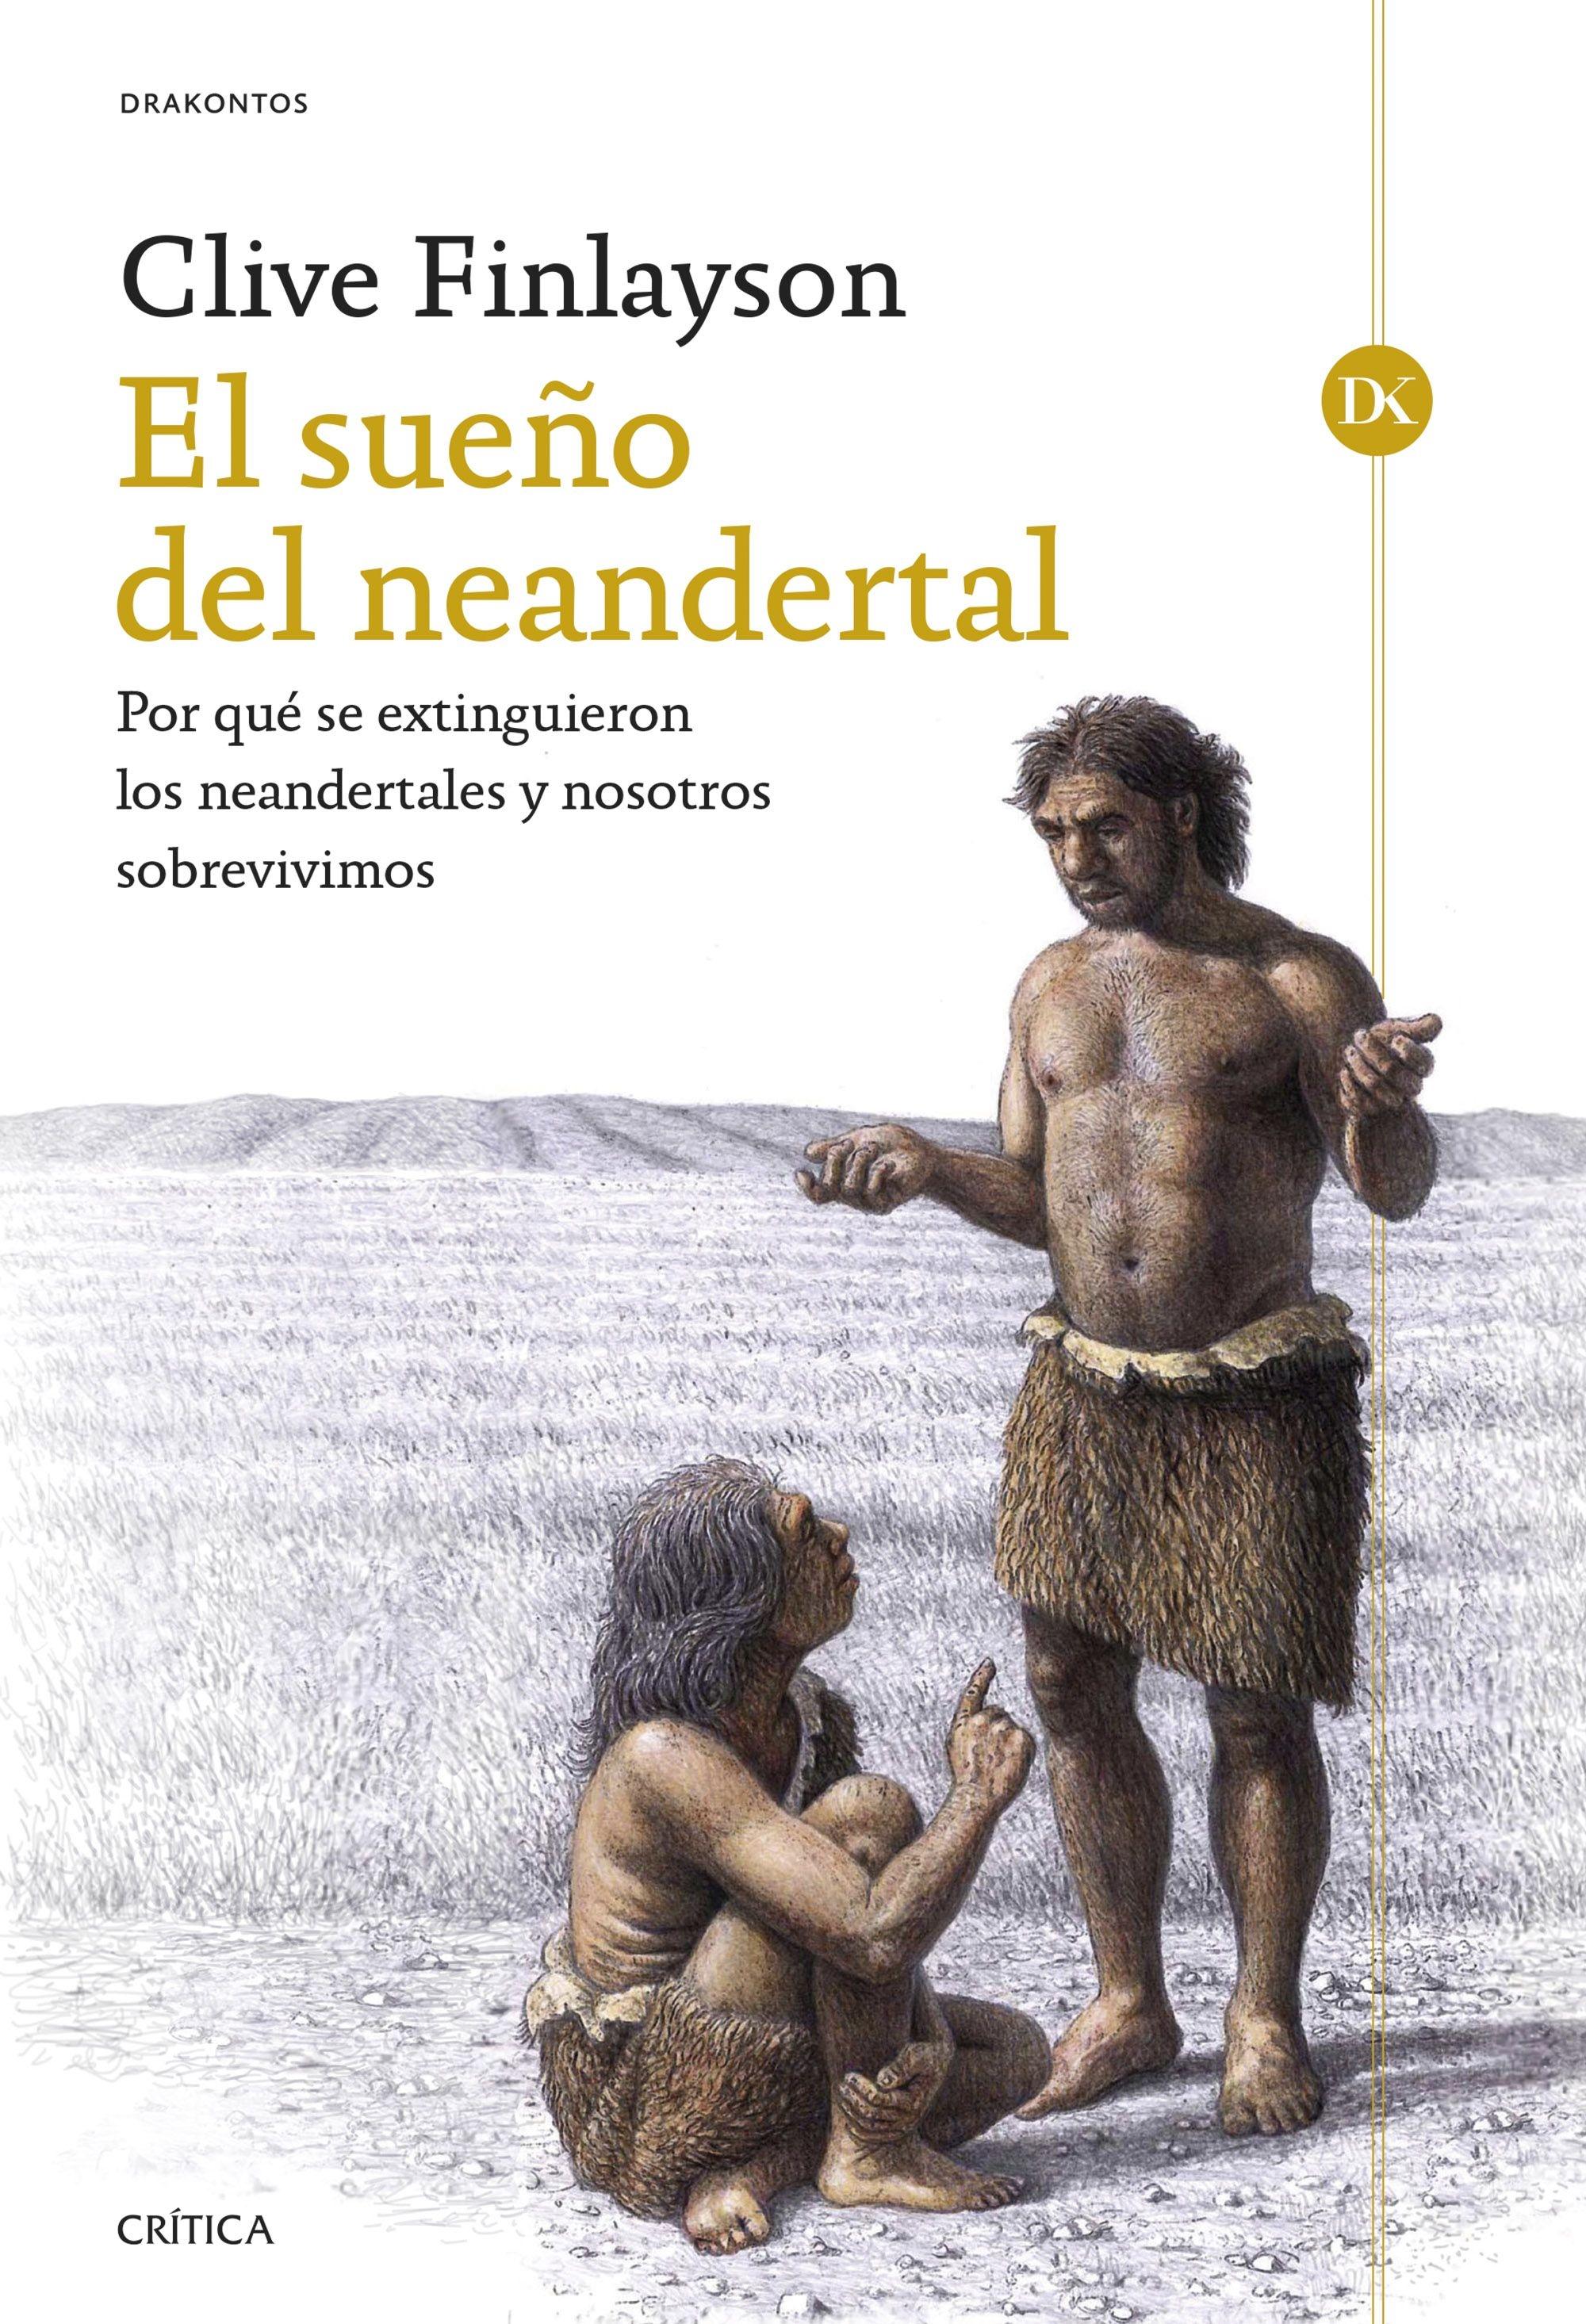 El Sueño del Neandertal "Por que se Extinguieron los Neandertales y nosotros Sobrevivimos"